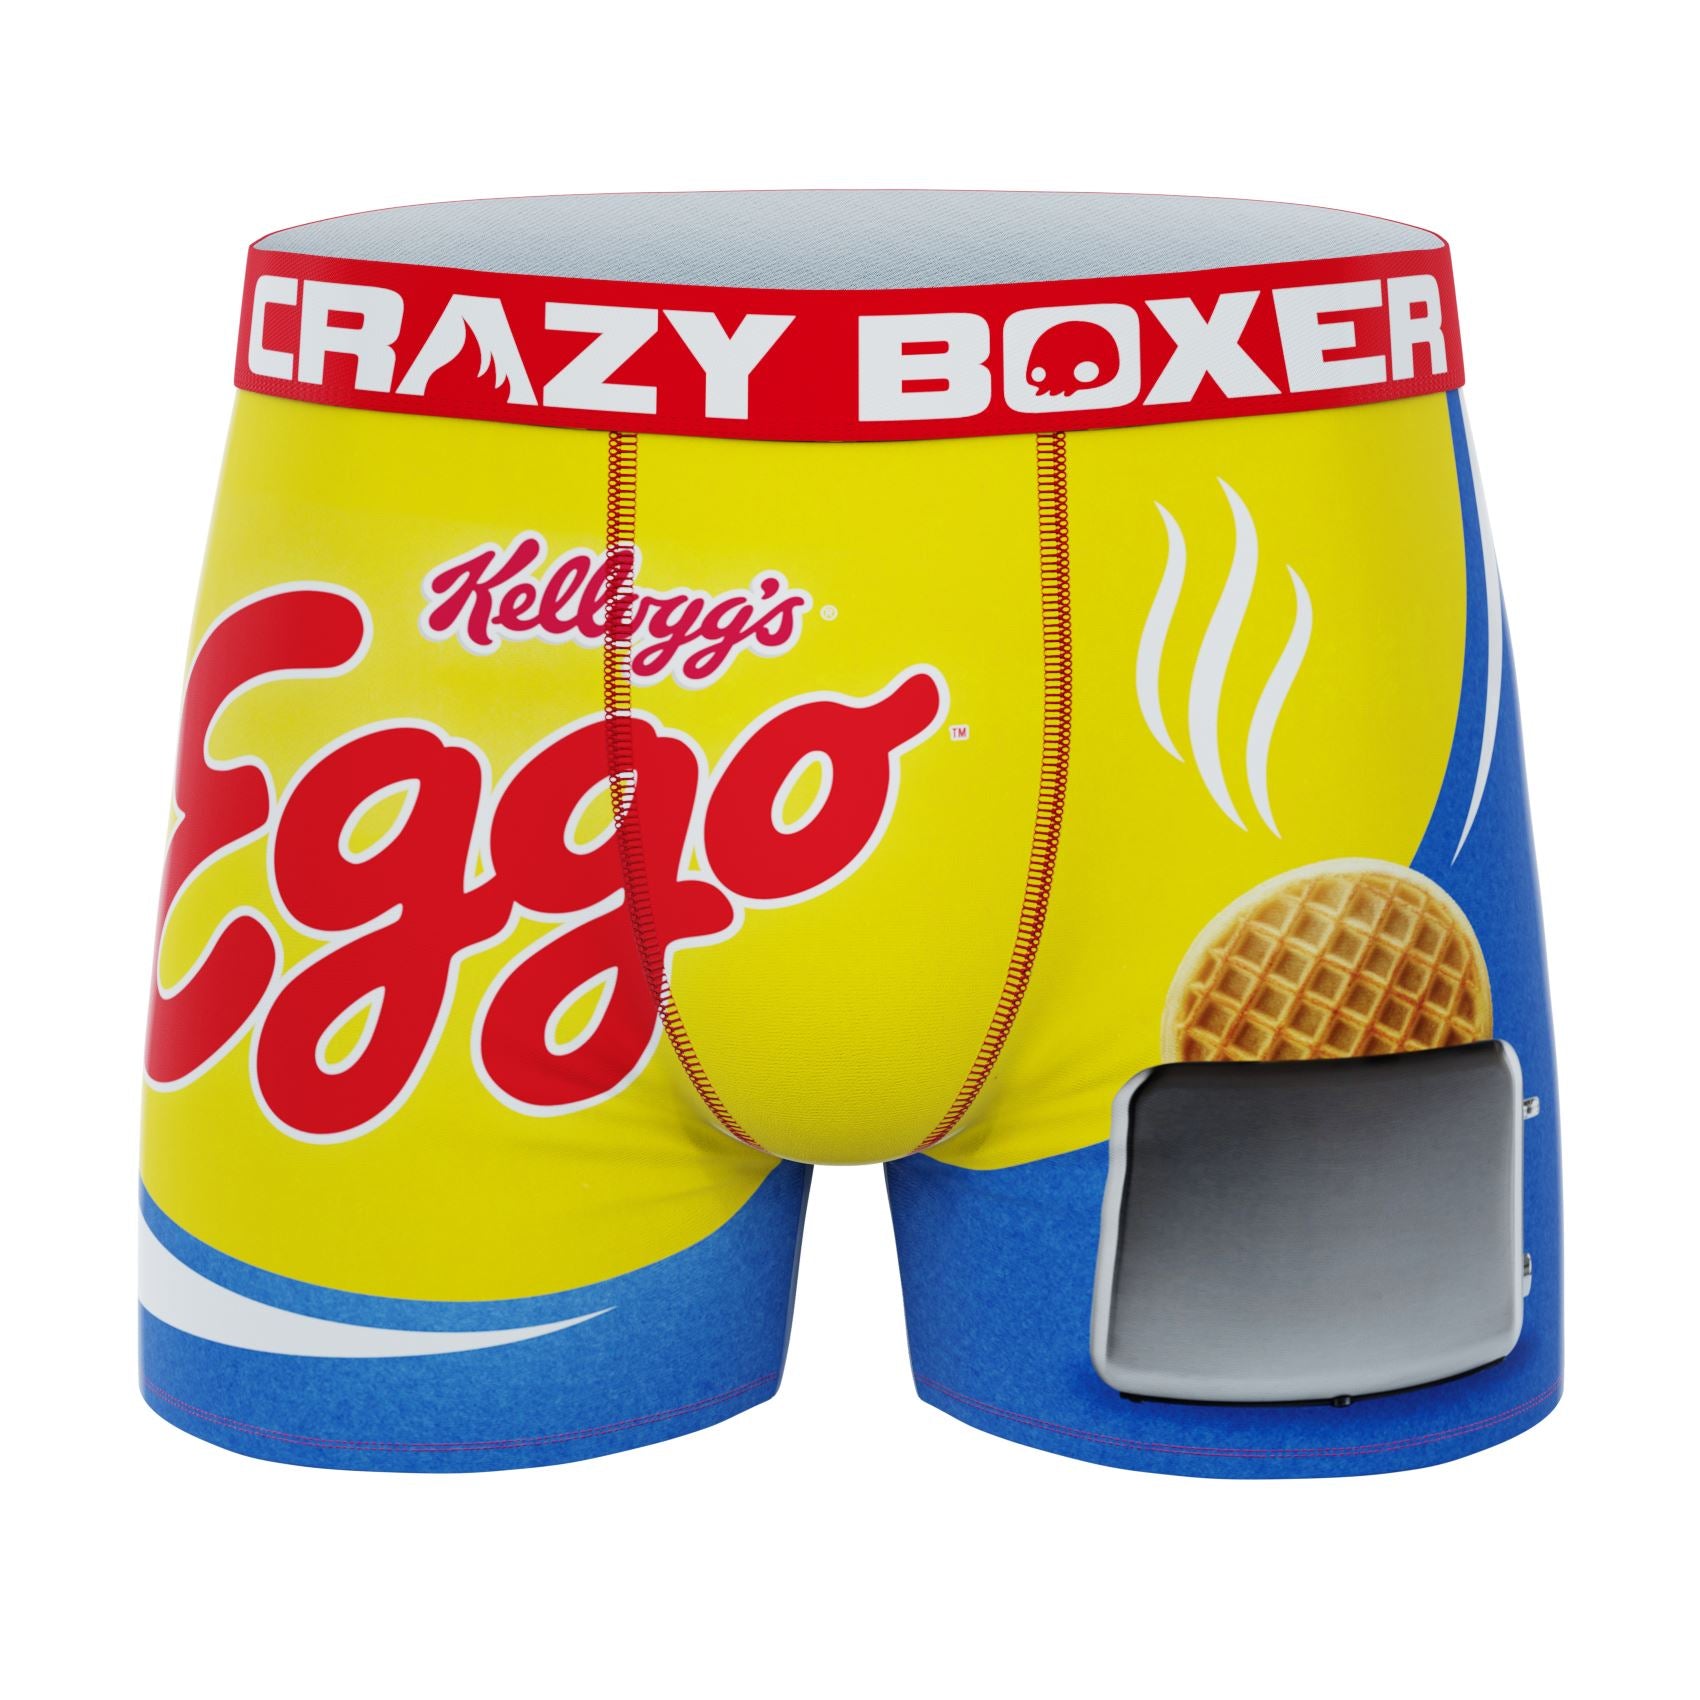 CRAZYBOXER Kellogg's Eggo; Men's Boxer Briefs, 3-Pack 